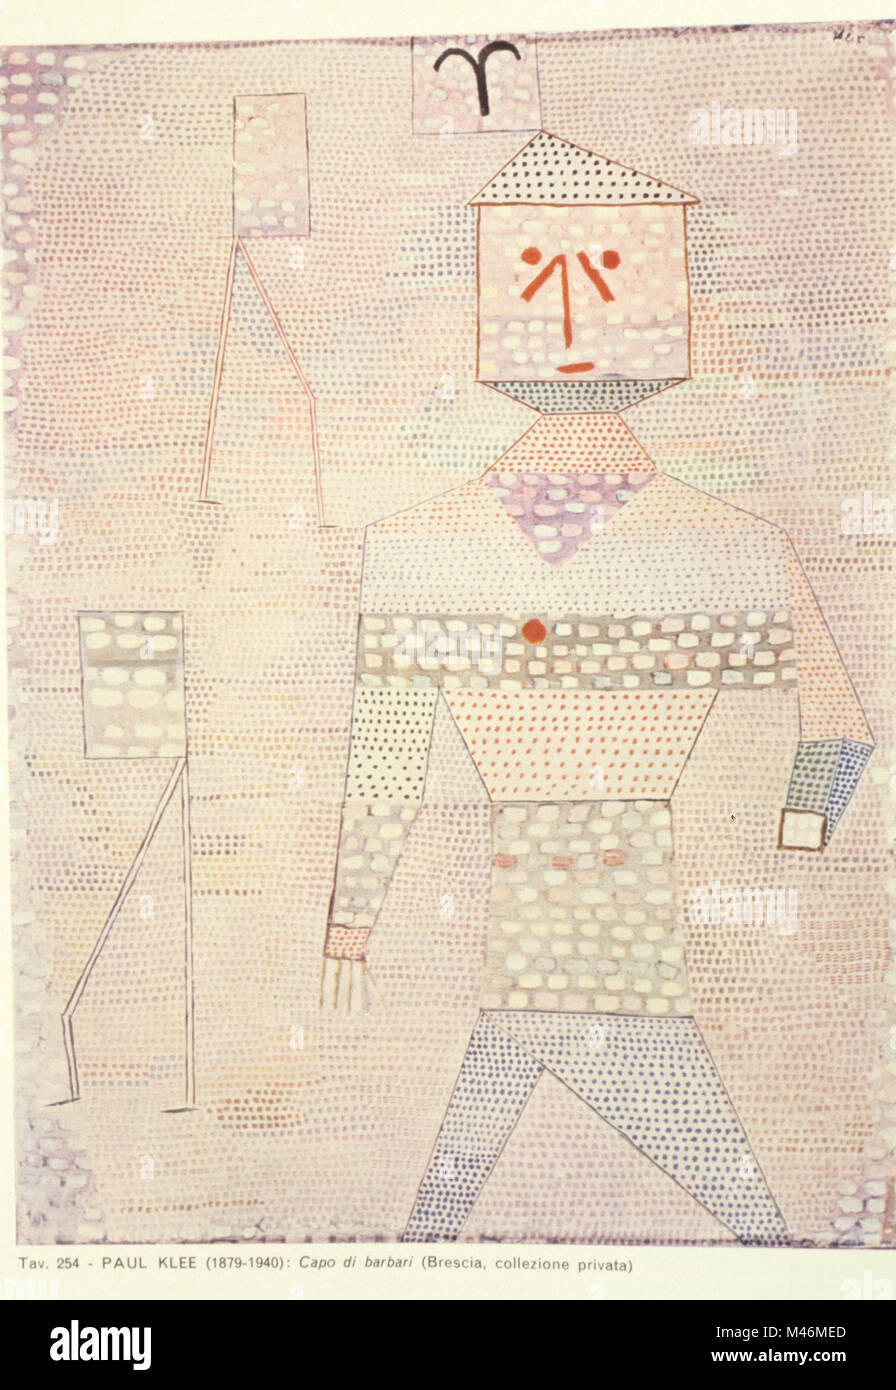 General a cargo de los bárbaros, Paul Klee, 1932 Foto de stock